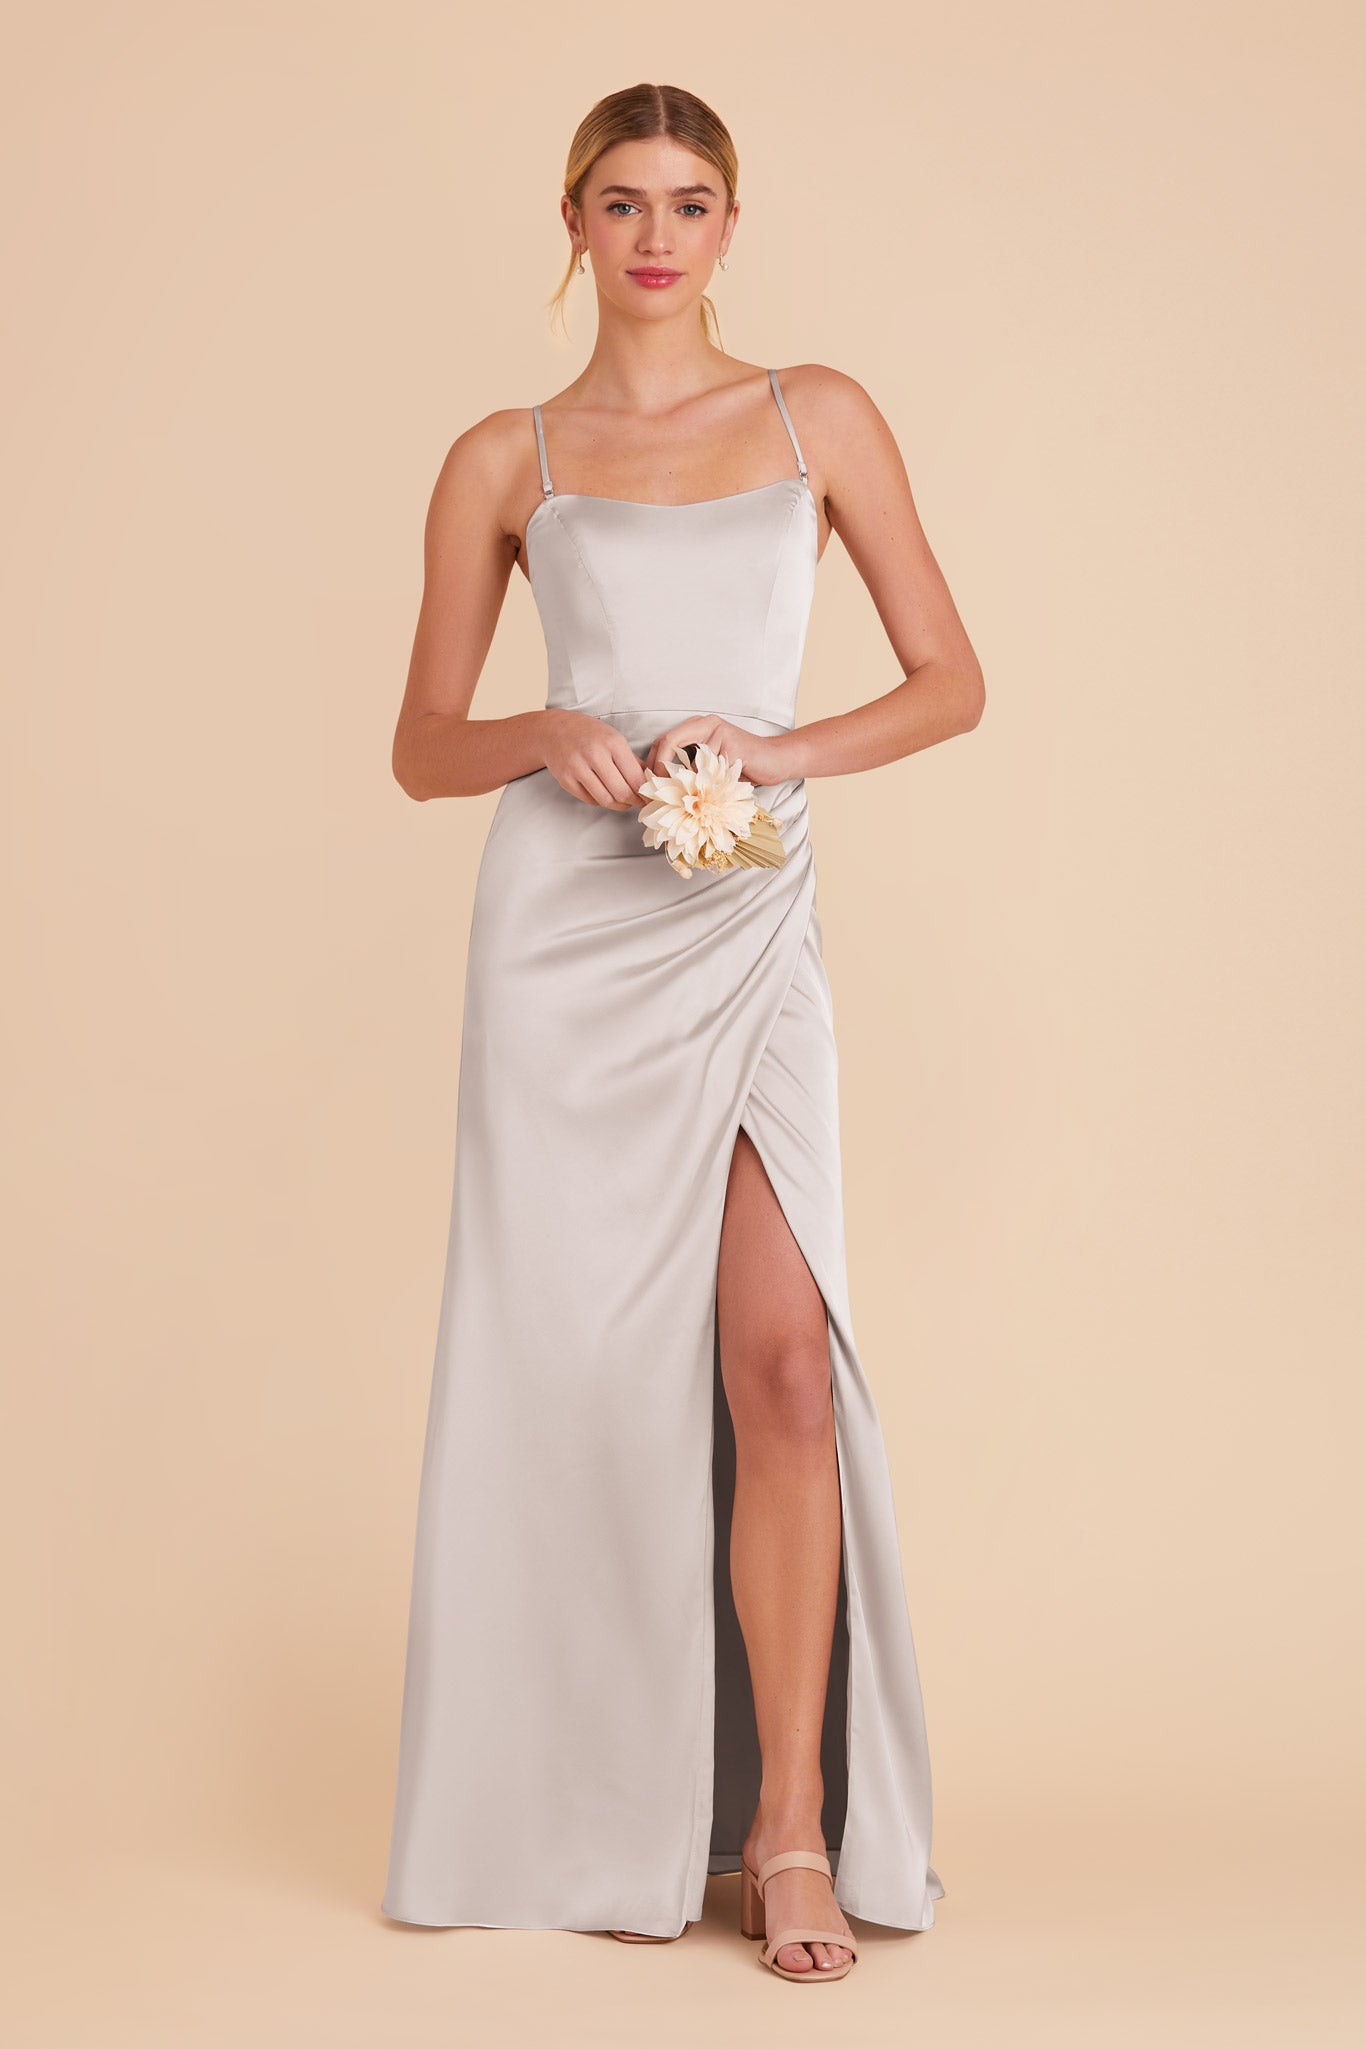 Platinum Anne Matte Satin Dress by Birdy Grey